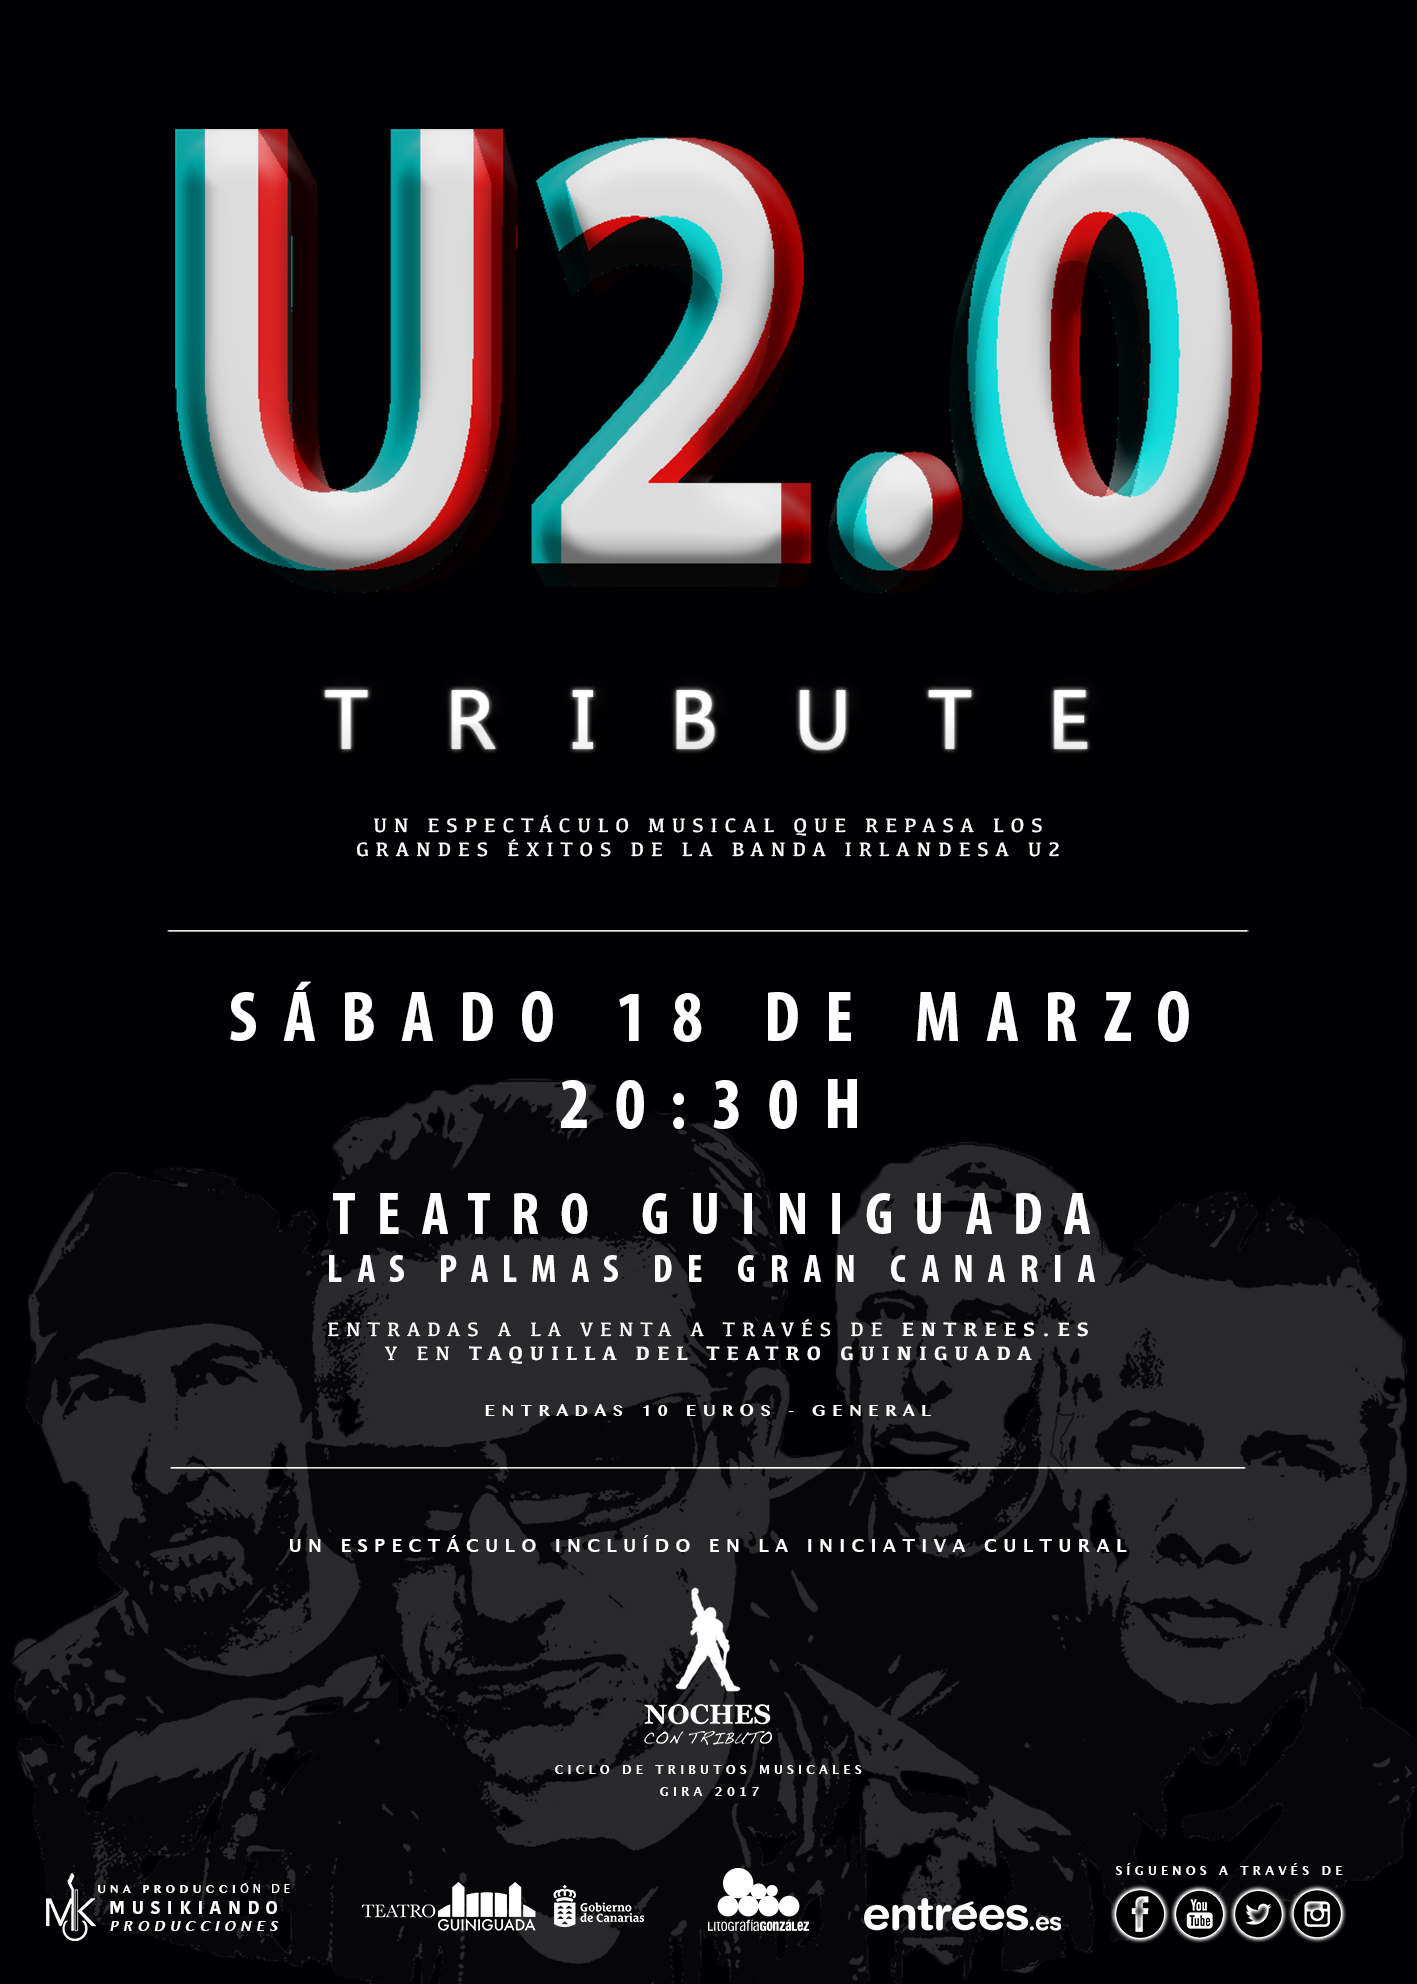 U2.0 Tribute, próximo 18 de Marzo en el Teatro Guiniguada